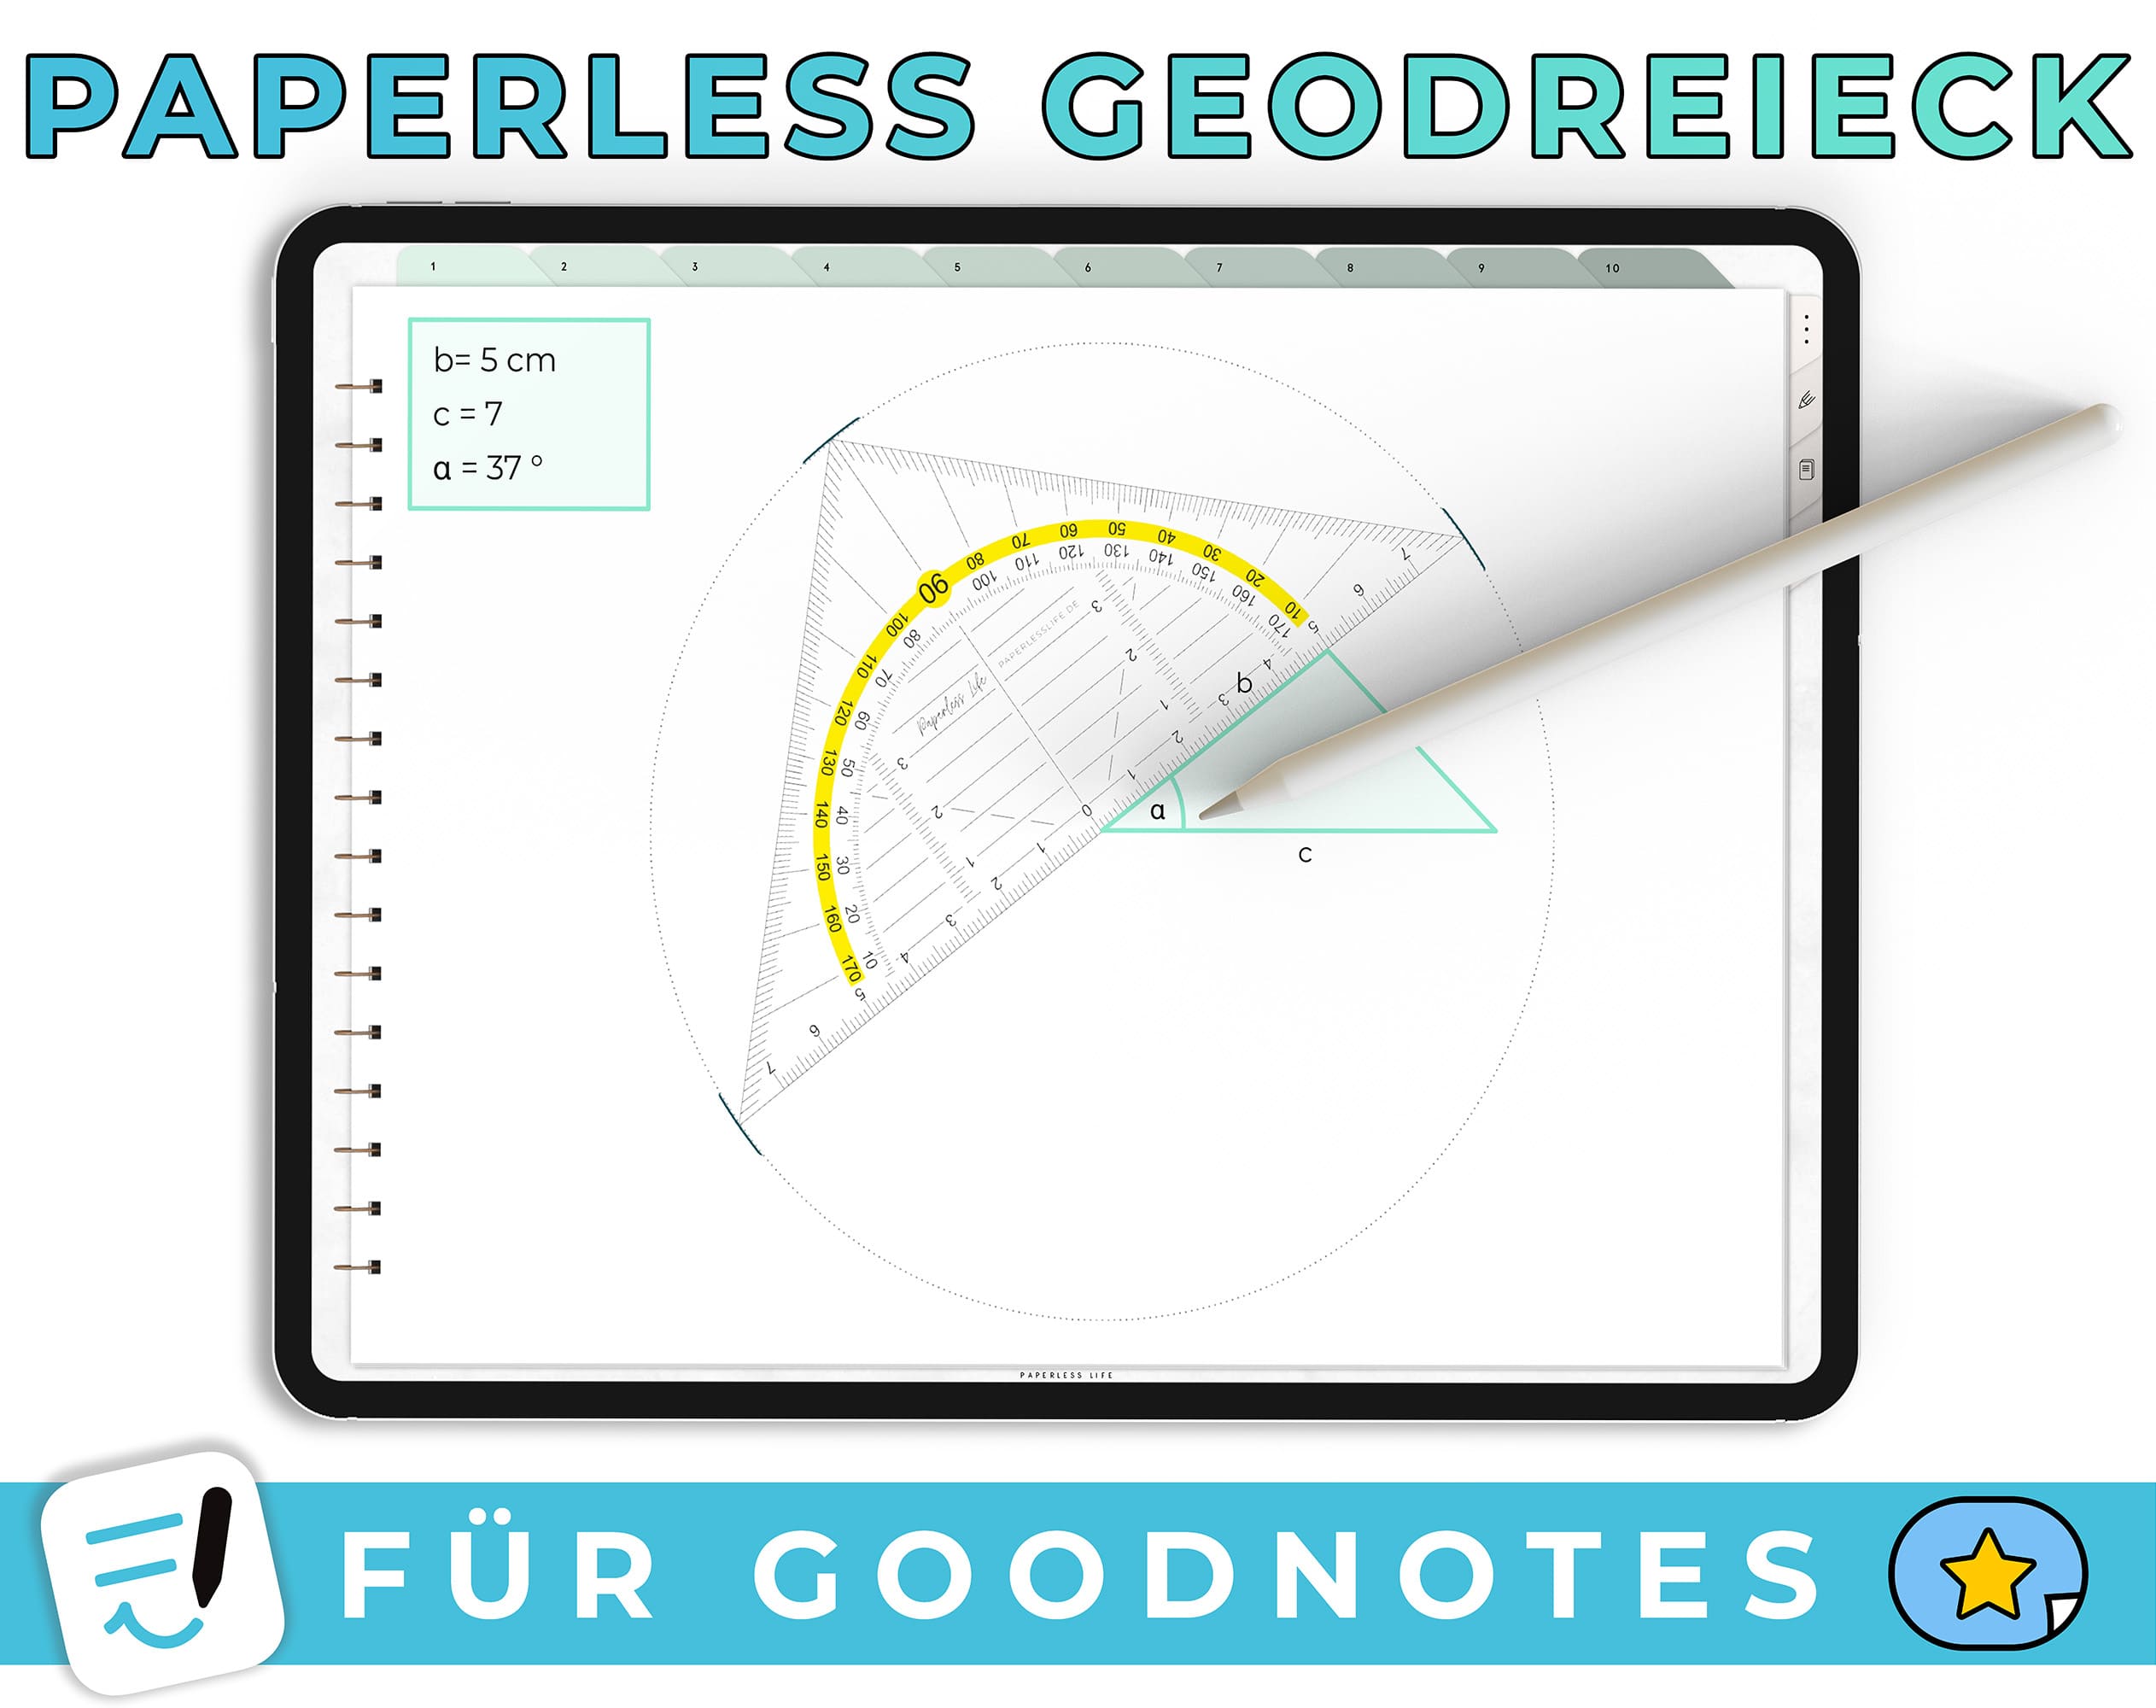 Paperless Geodreieck - Für Goodnotes (iOS)